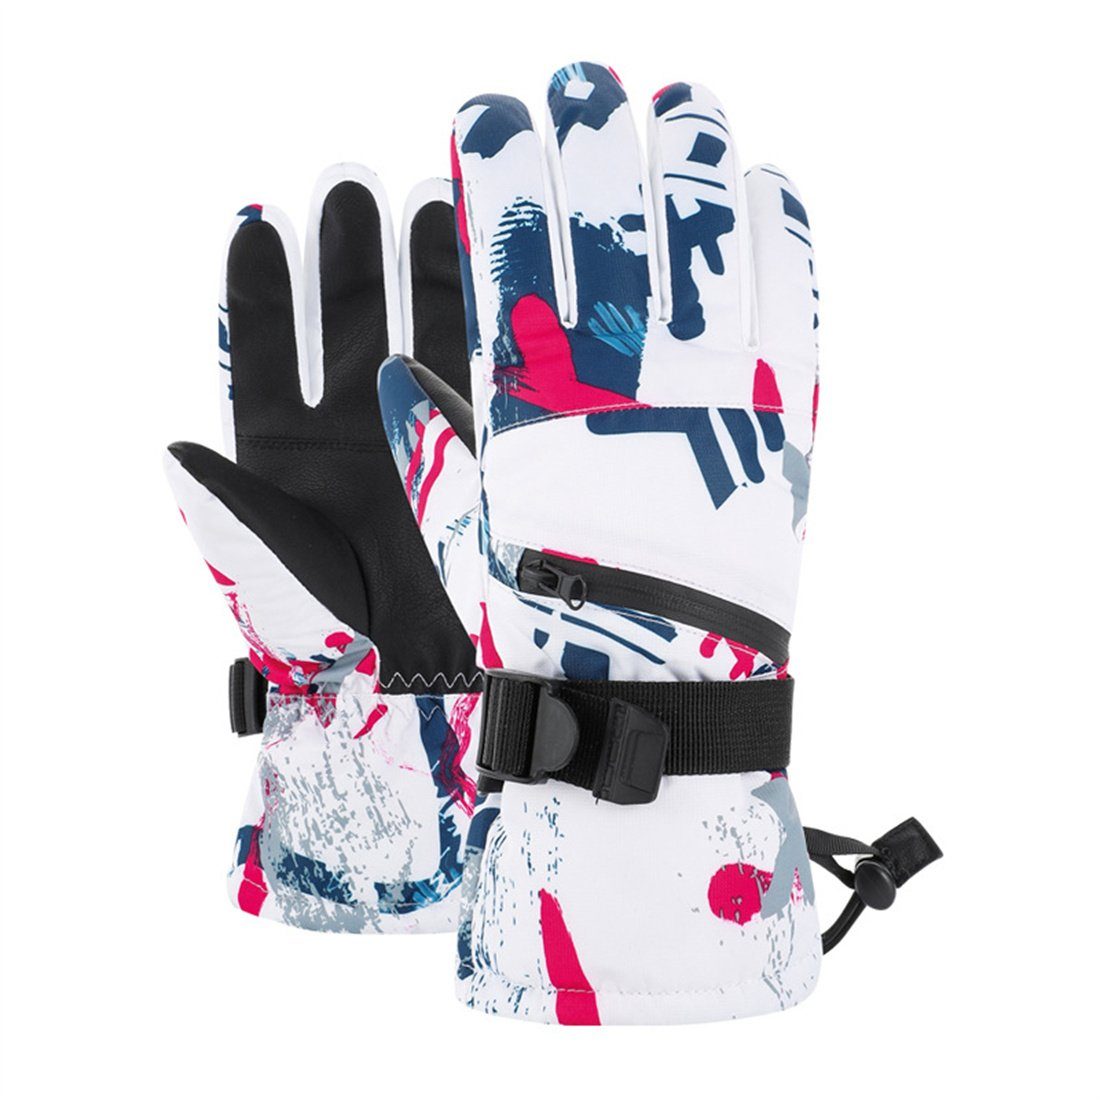 Erwachsene, für Skihandschuhe verdickte warme B Handschuhe,unisex Winter-Skihandschuhe DÖRÖY